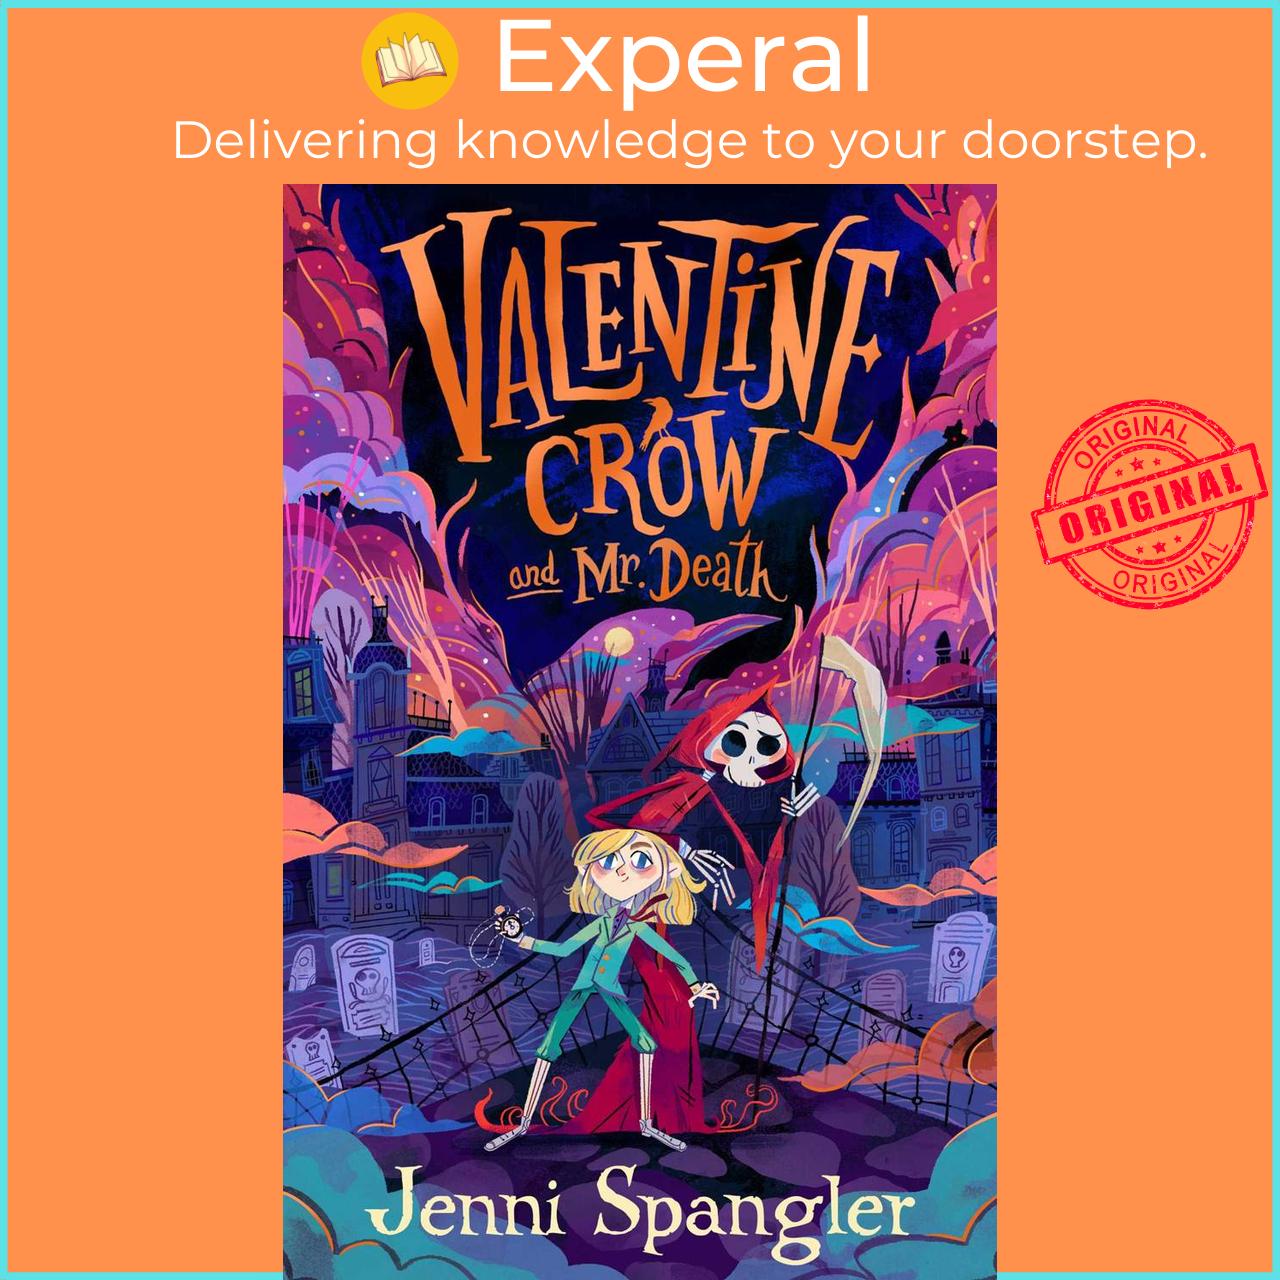 Sách - Valentine Crow & Mr Death by Jenni Spangler (UK edition, paperback)